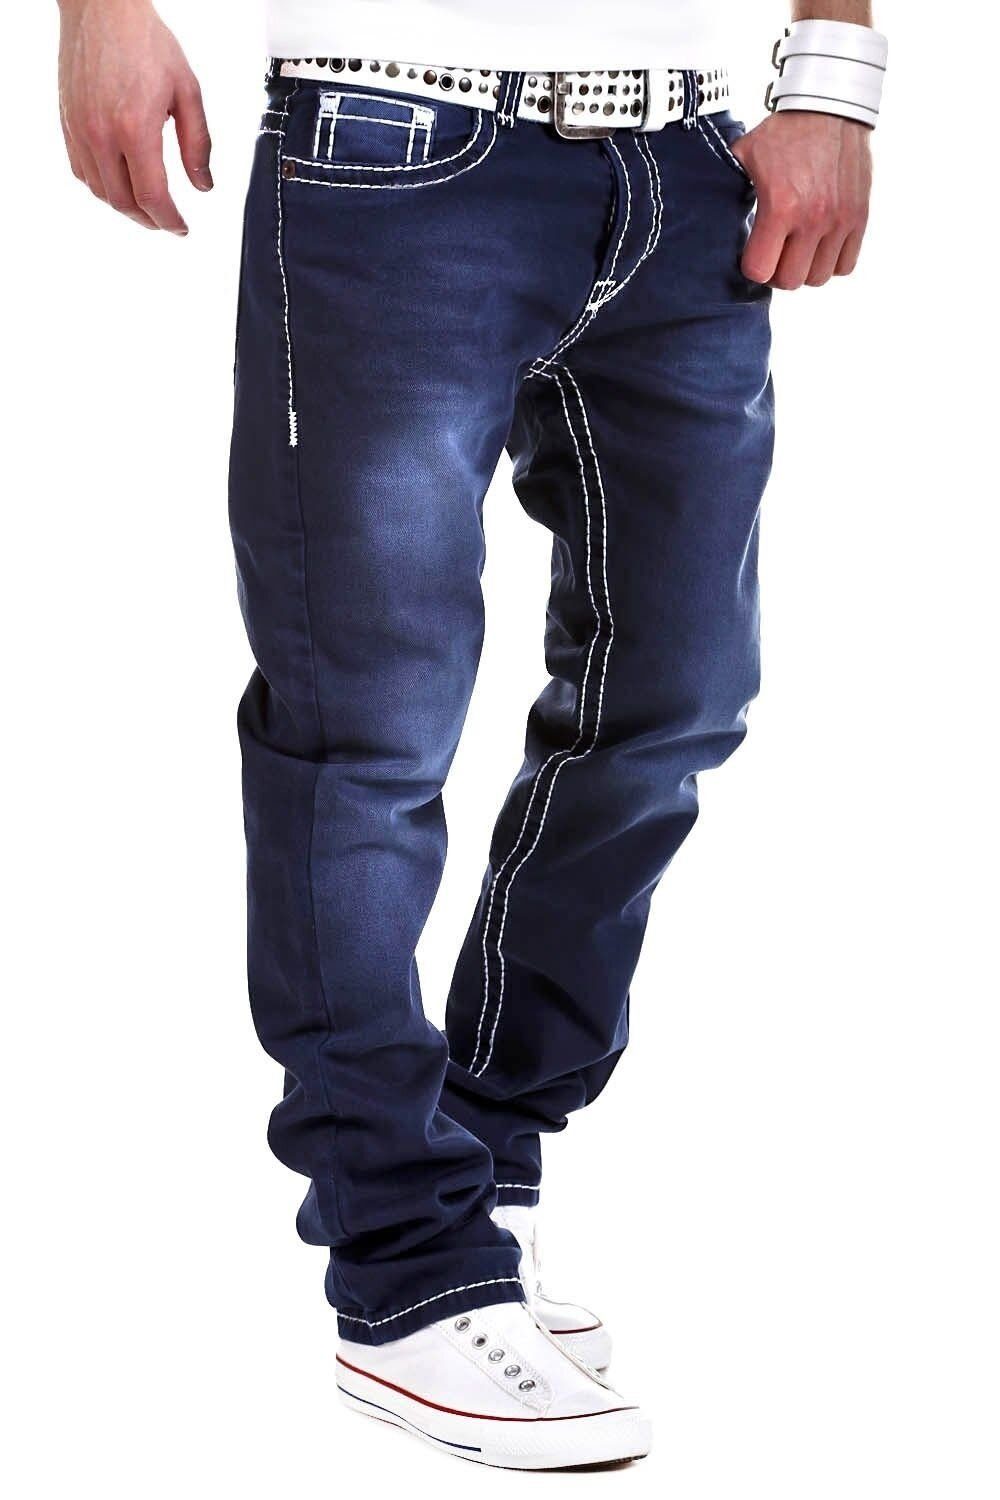 behype Bequeme Jeans Stitch mit dicken Kontrastnähten dunkelblau